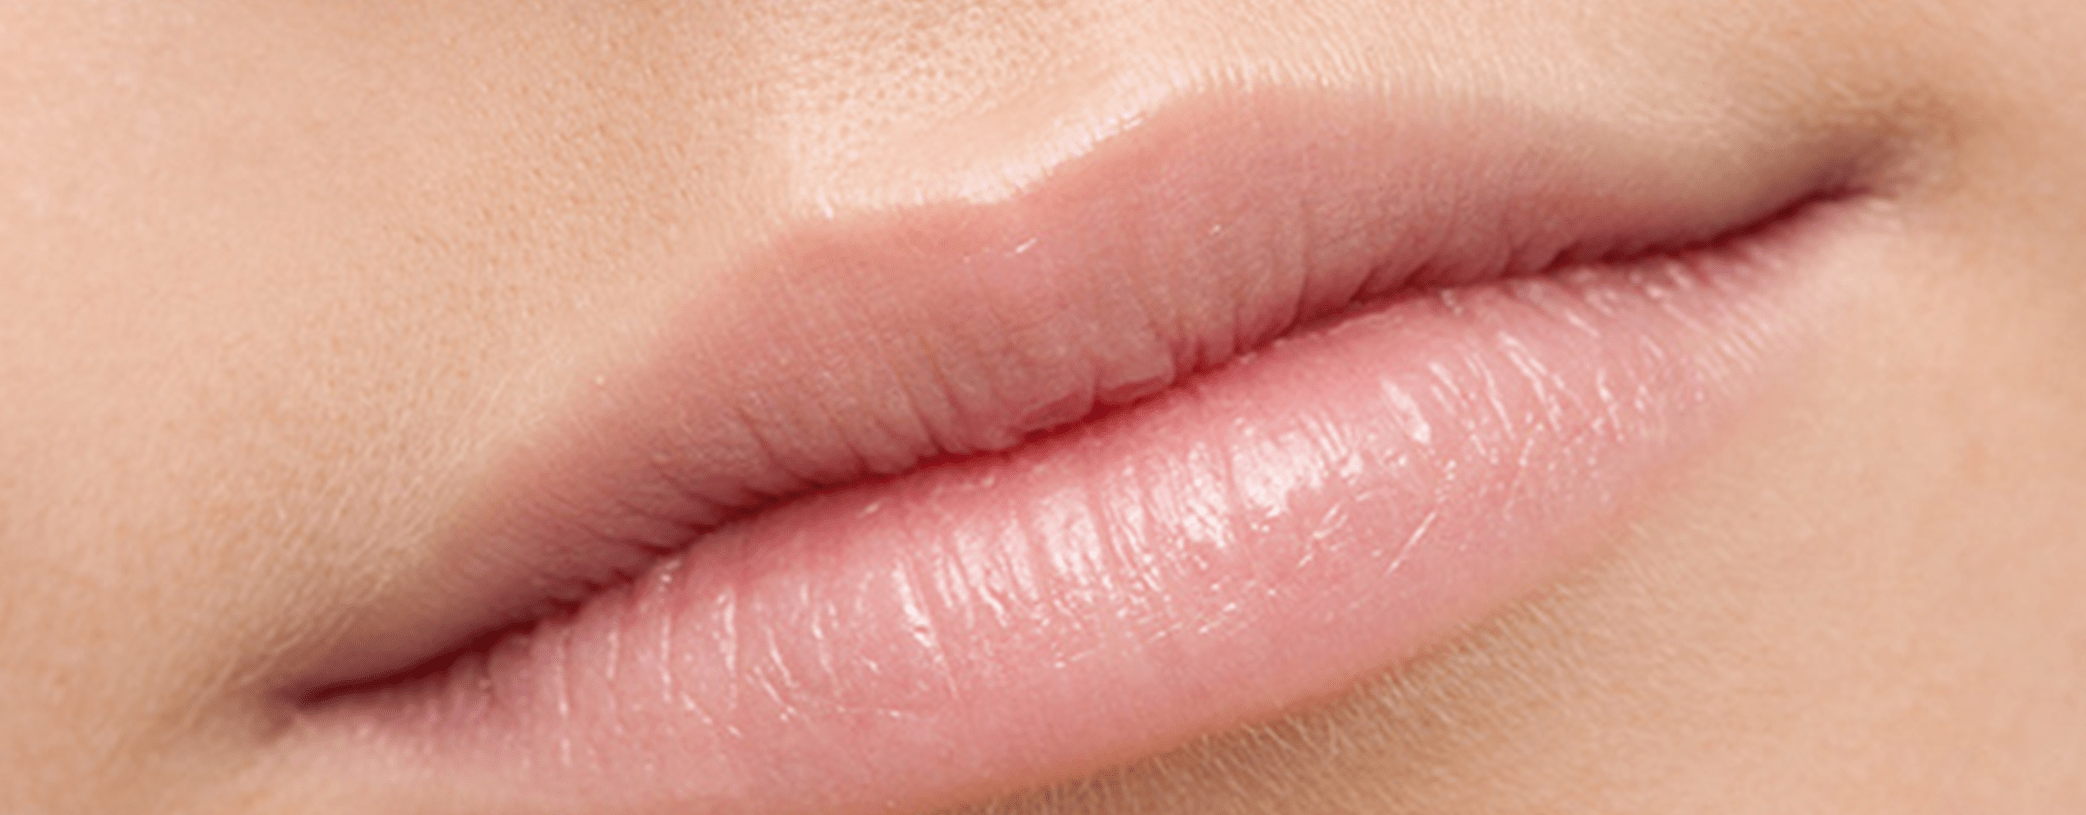 10 Penyebab Bibir Kering yang Bisa Dihindari dengan Mudah